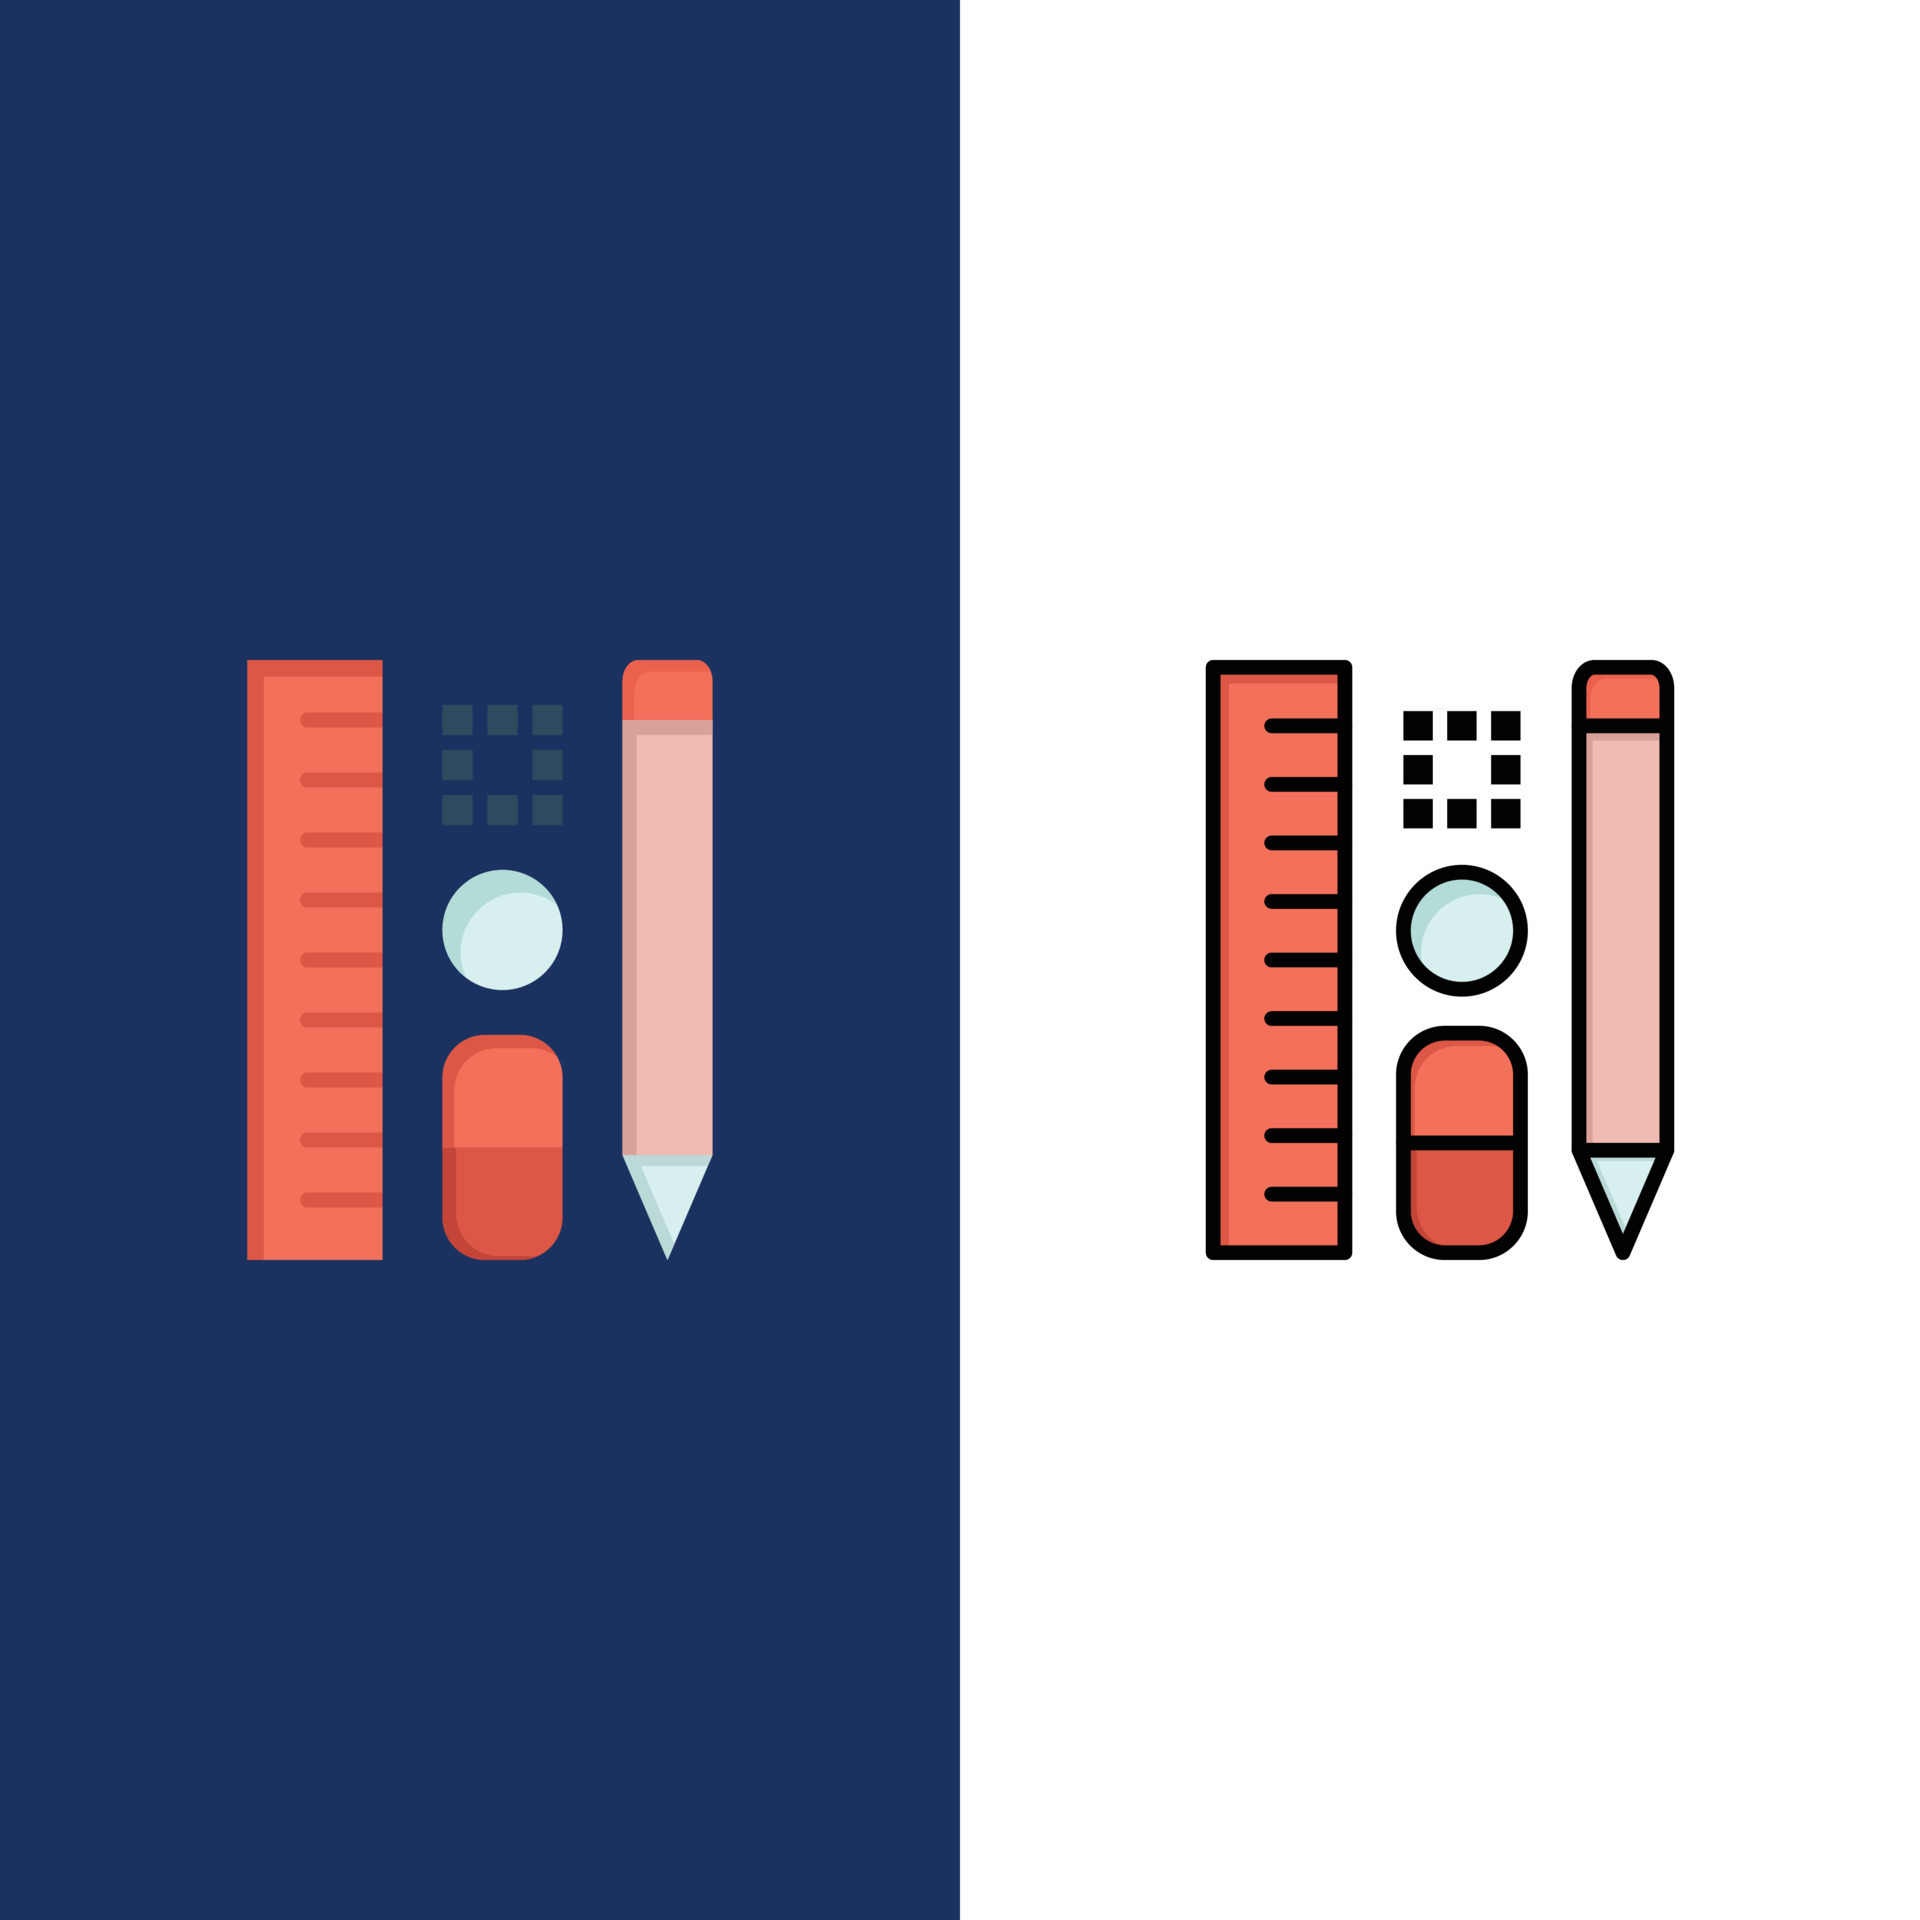 Với bộ sưu tập Pen Pencil Scale Education Icons Flat and Line Filled Icon Set, bạn sẽ có được những biểu tượng giáo dục độc đáo và phù hợp với nhiều mục đích sử dụng. Hãy cùng tìm hiểu và tận hưởng sự đa dạng trong thiết kế biểu tượng nhé.